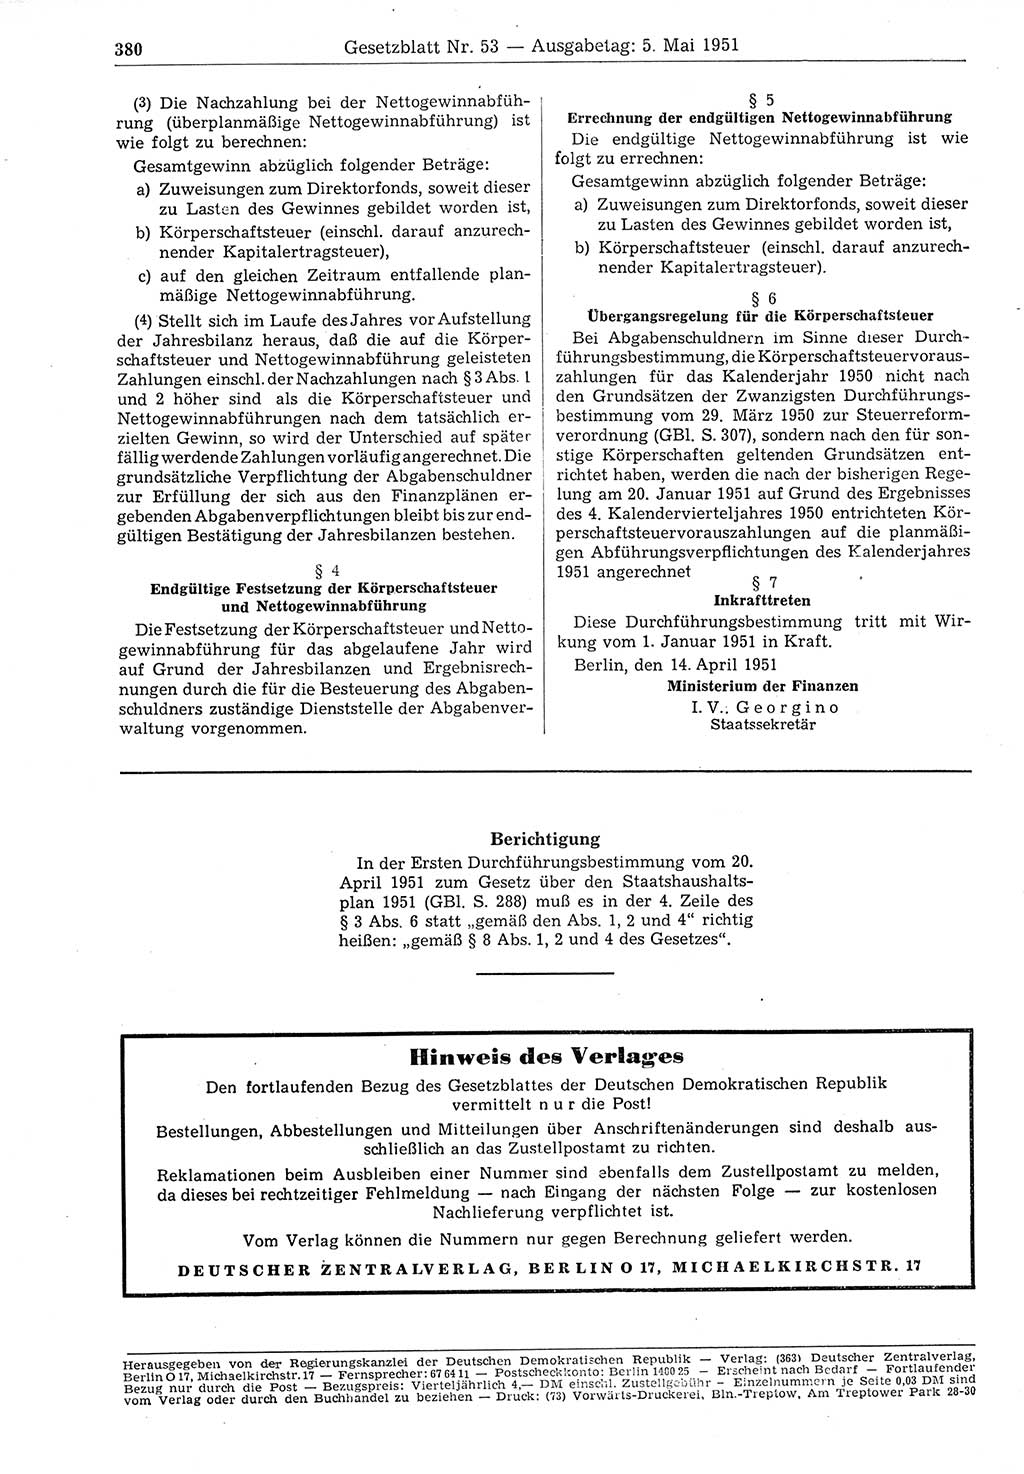 Gesetzblatt (GBl.) der Deutschen Demokratischen Republik (DDR) 1951, Seite 380 (GBl. DDR 1951, S. 380)